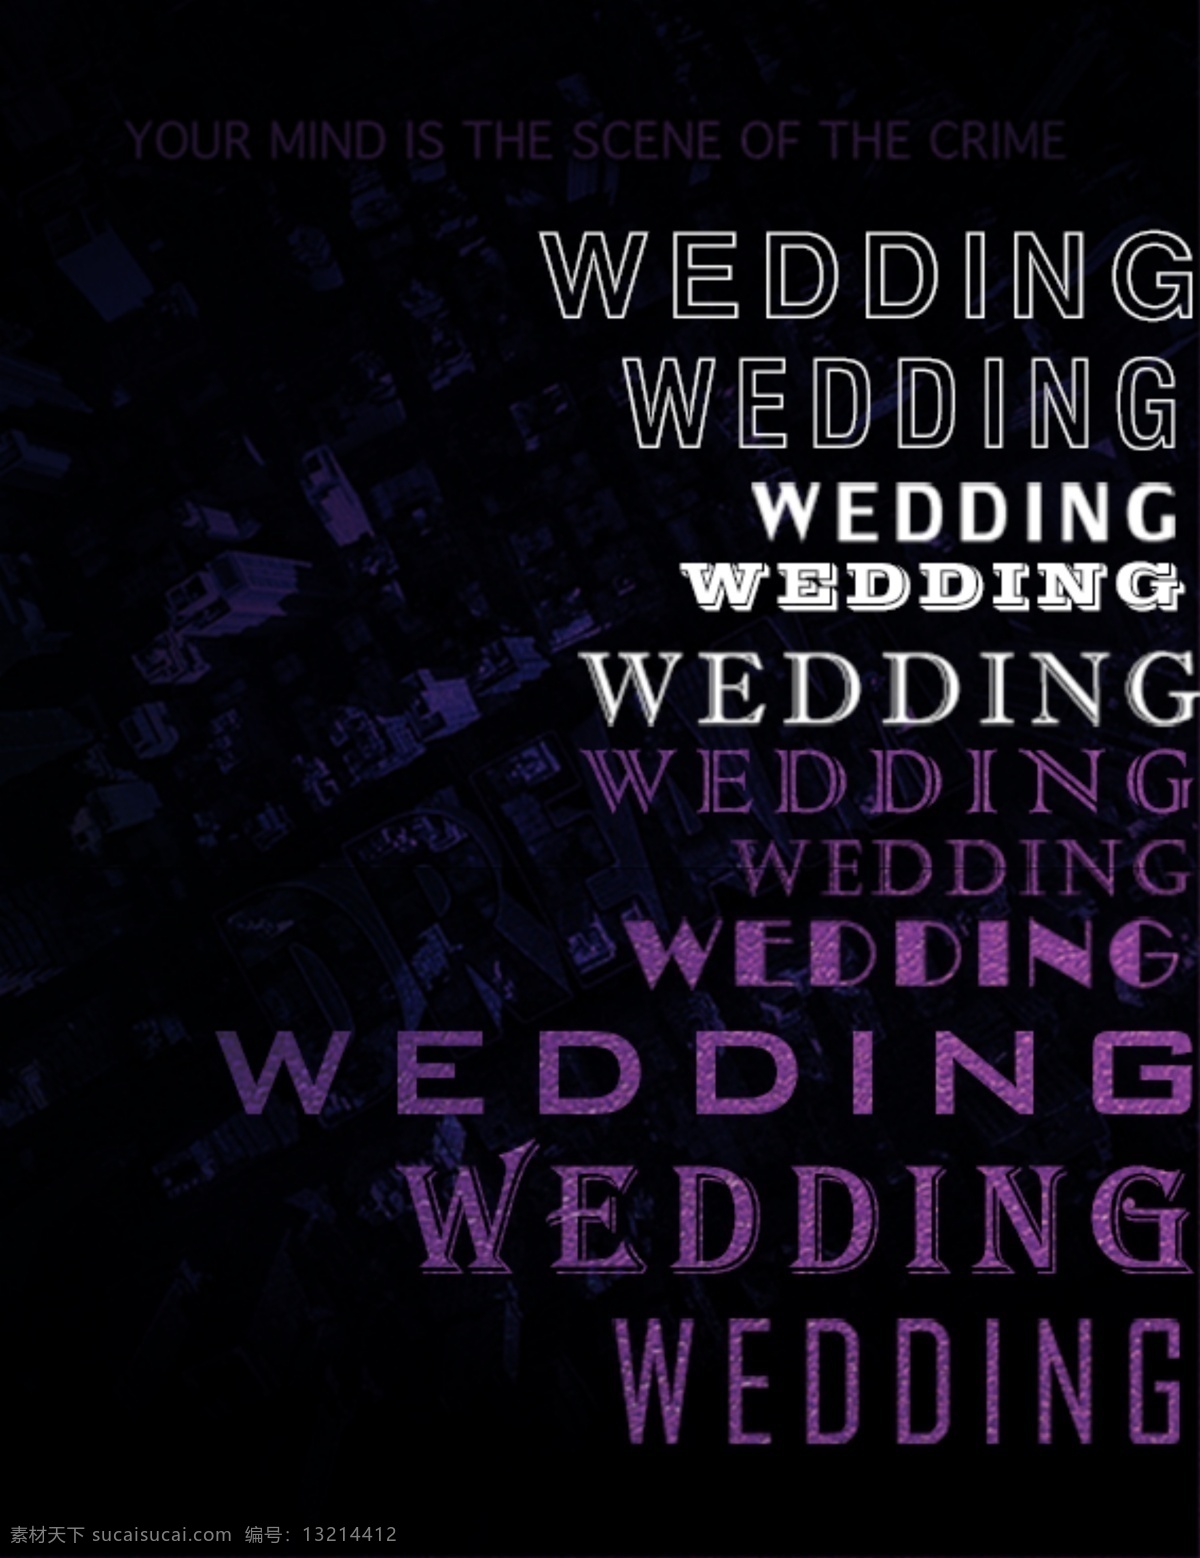 wedding 暗黑 神秘 海报 神秘暗黑 紫色白色 各种字体 纯文字海报 简约典雅 创意婚礼